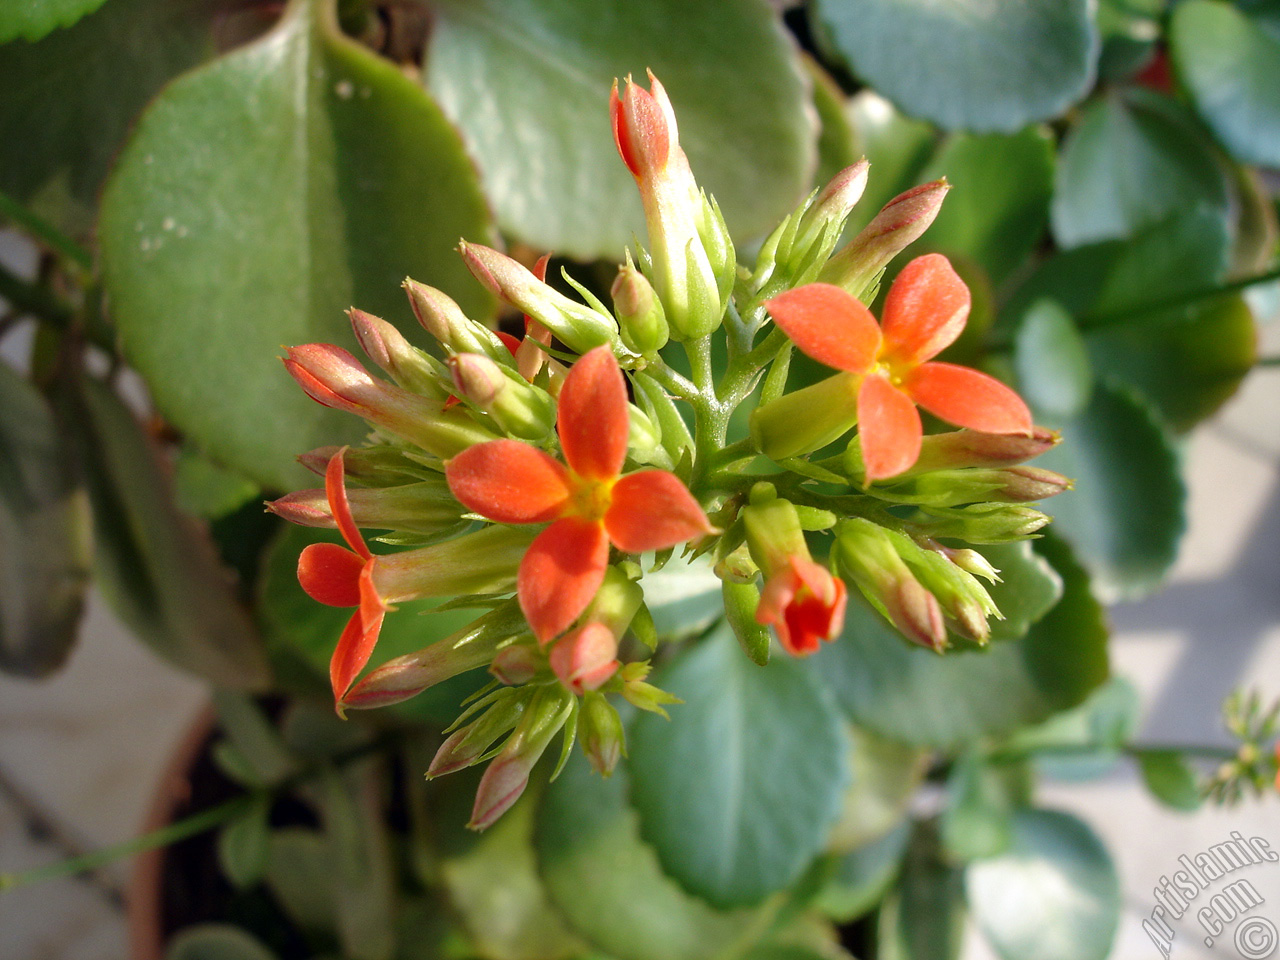 Kalano (Kalanchoe) bitkisinin ieinin resmi.
